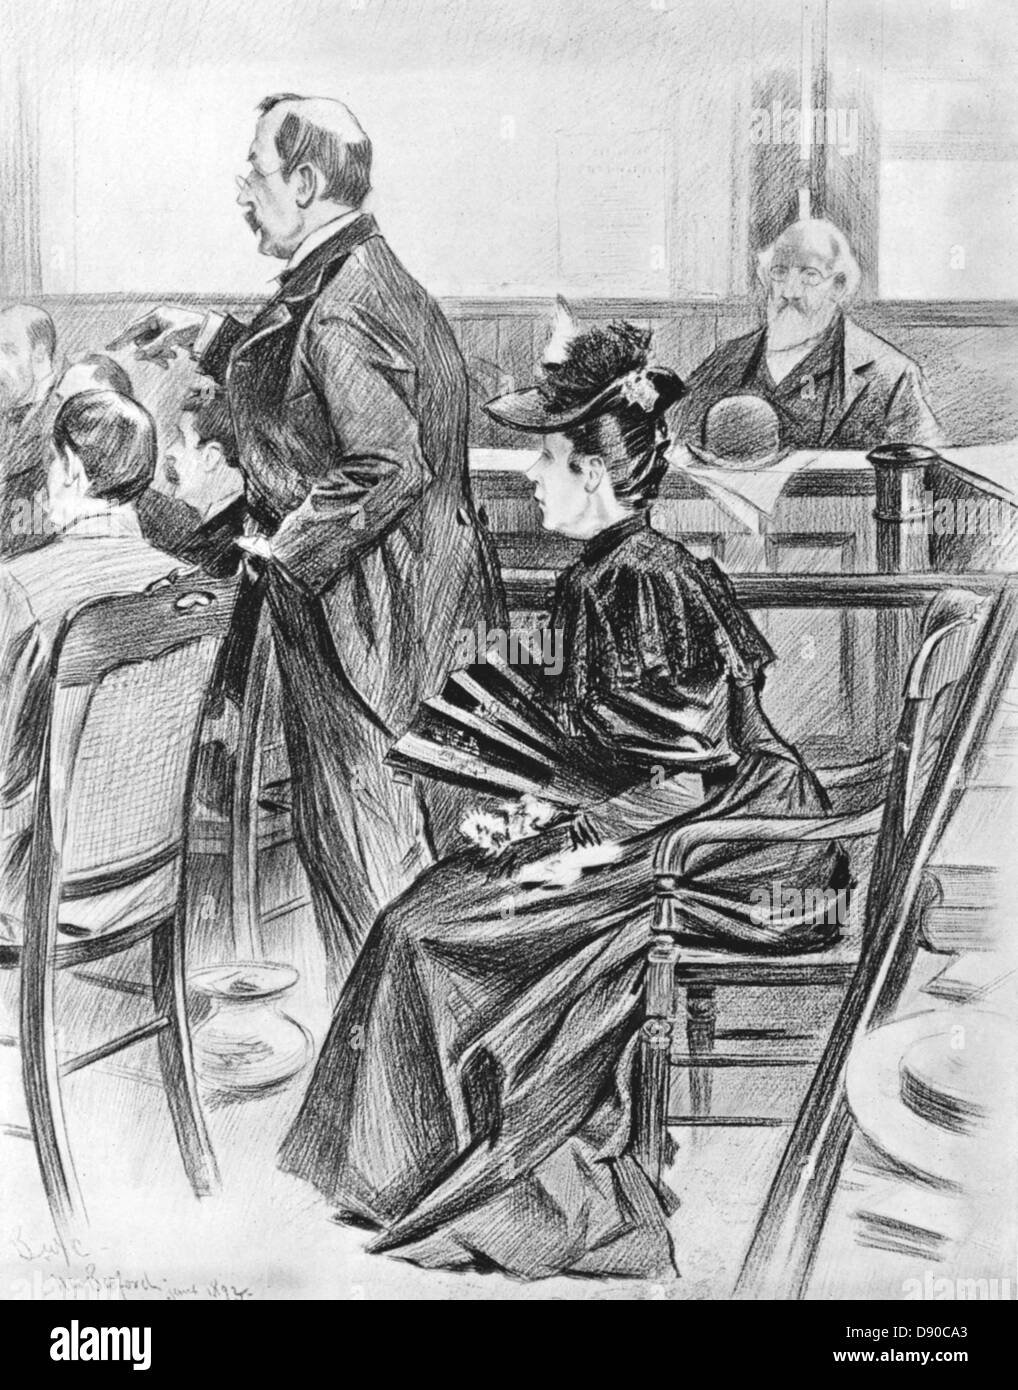 LIZZIE BORDEN (1860-1927) femme américaine à son procès de l'ax 1892 assassinats de son père et belle-mère Banque D'Images